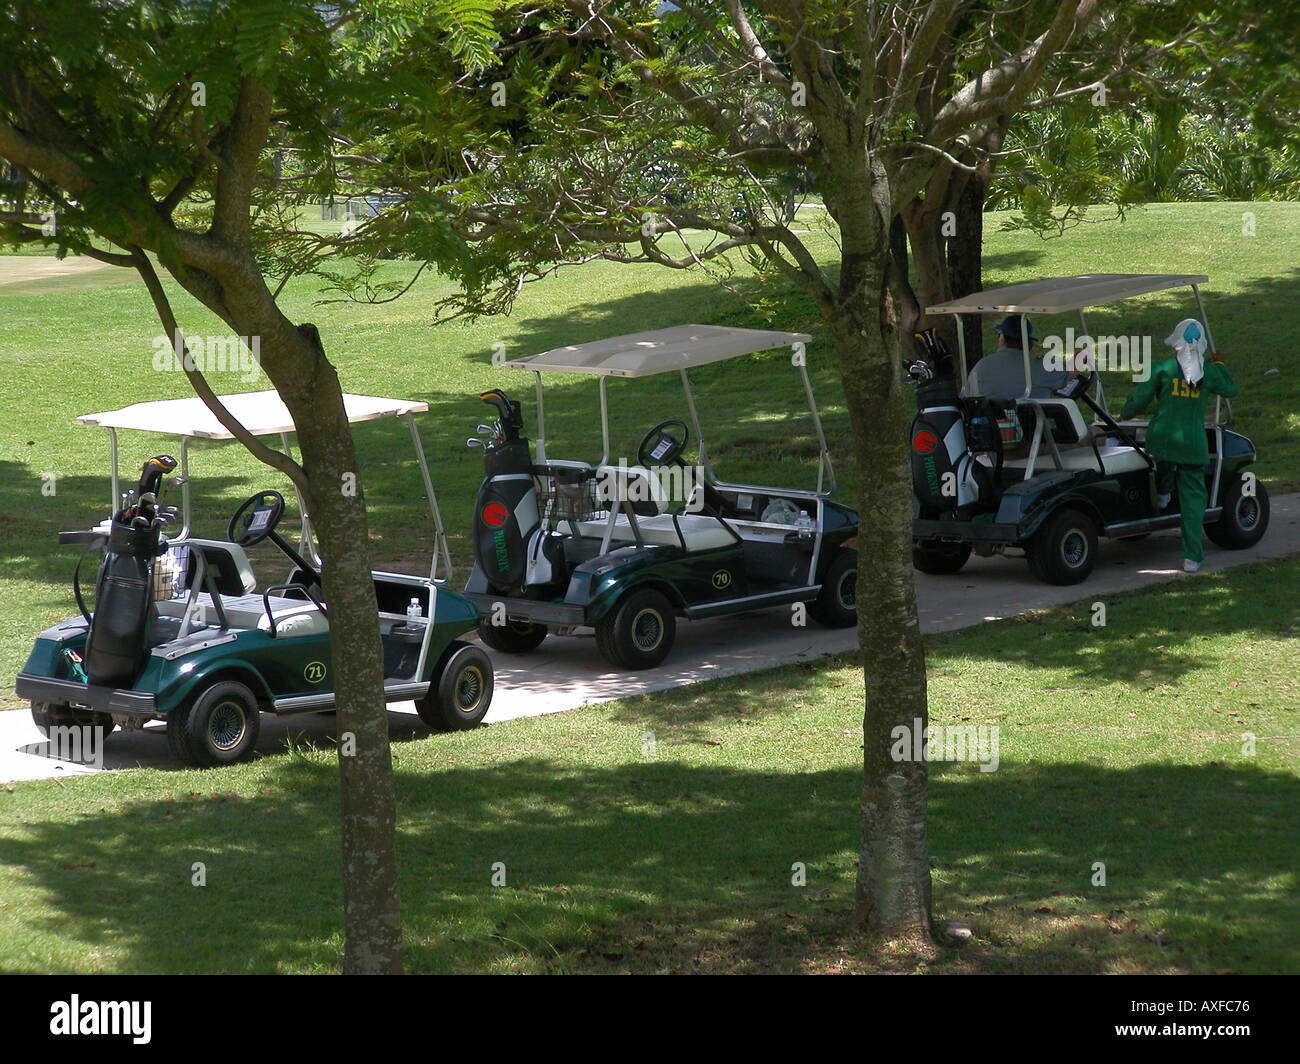 Des voiturettes de golf trois garée à l'ombre, femme caddie escalade en premier, Phoenix Golf and Country Club Pattaya Thaïlande Banque D'Images